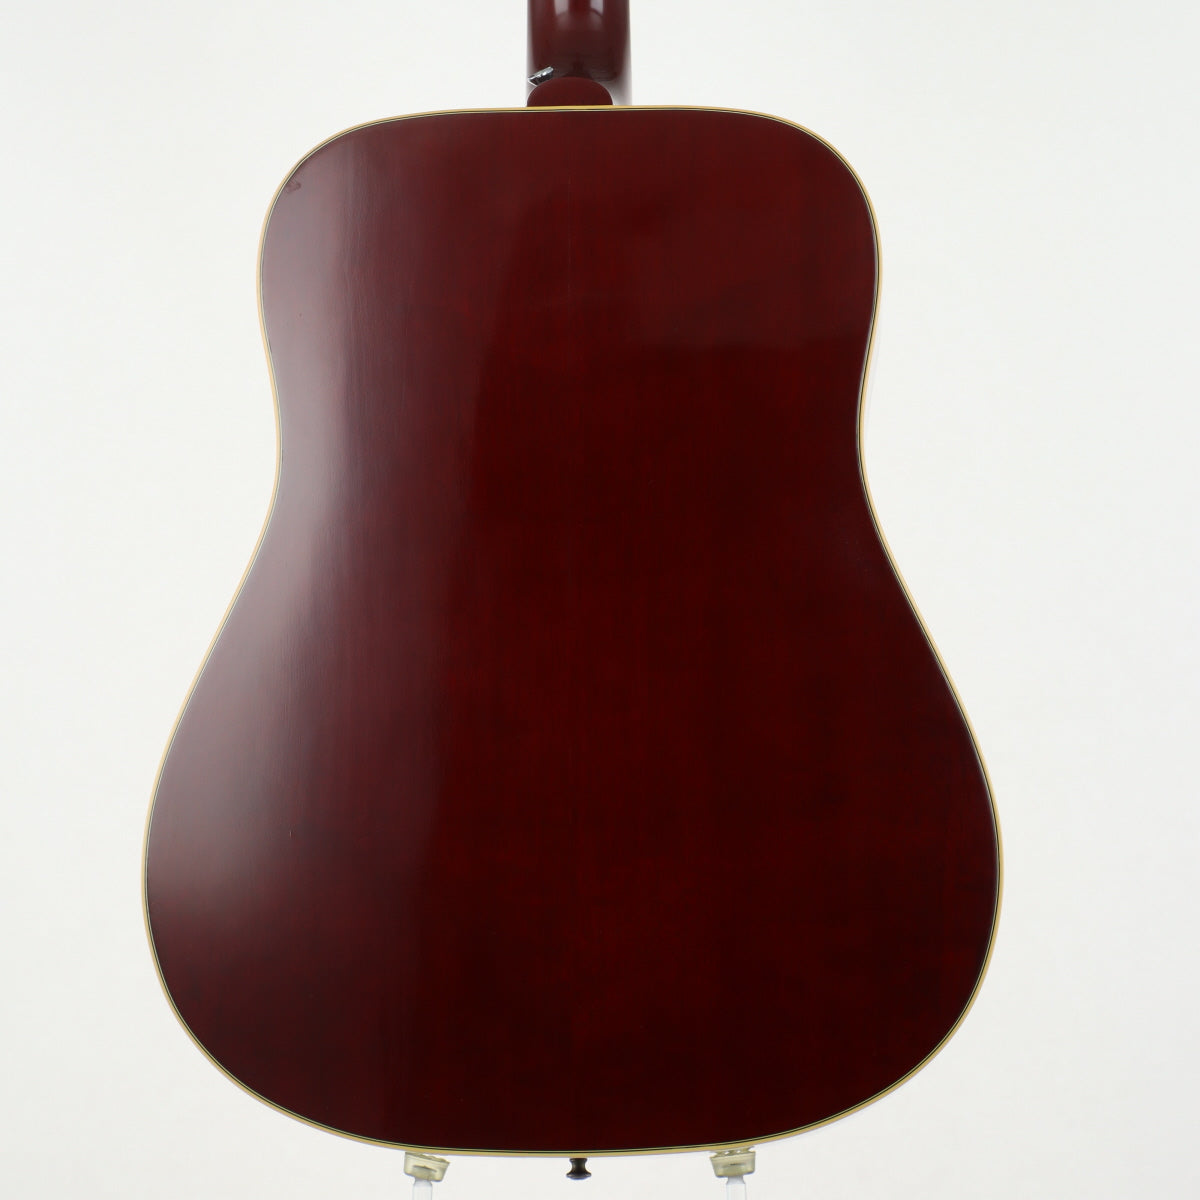 [SN 91787035] USED Gibson Montana Gibson / Early 60s Humming Bird Vintage Cherry Sunburst [20]